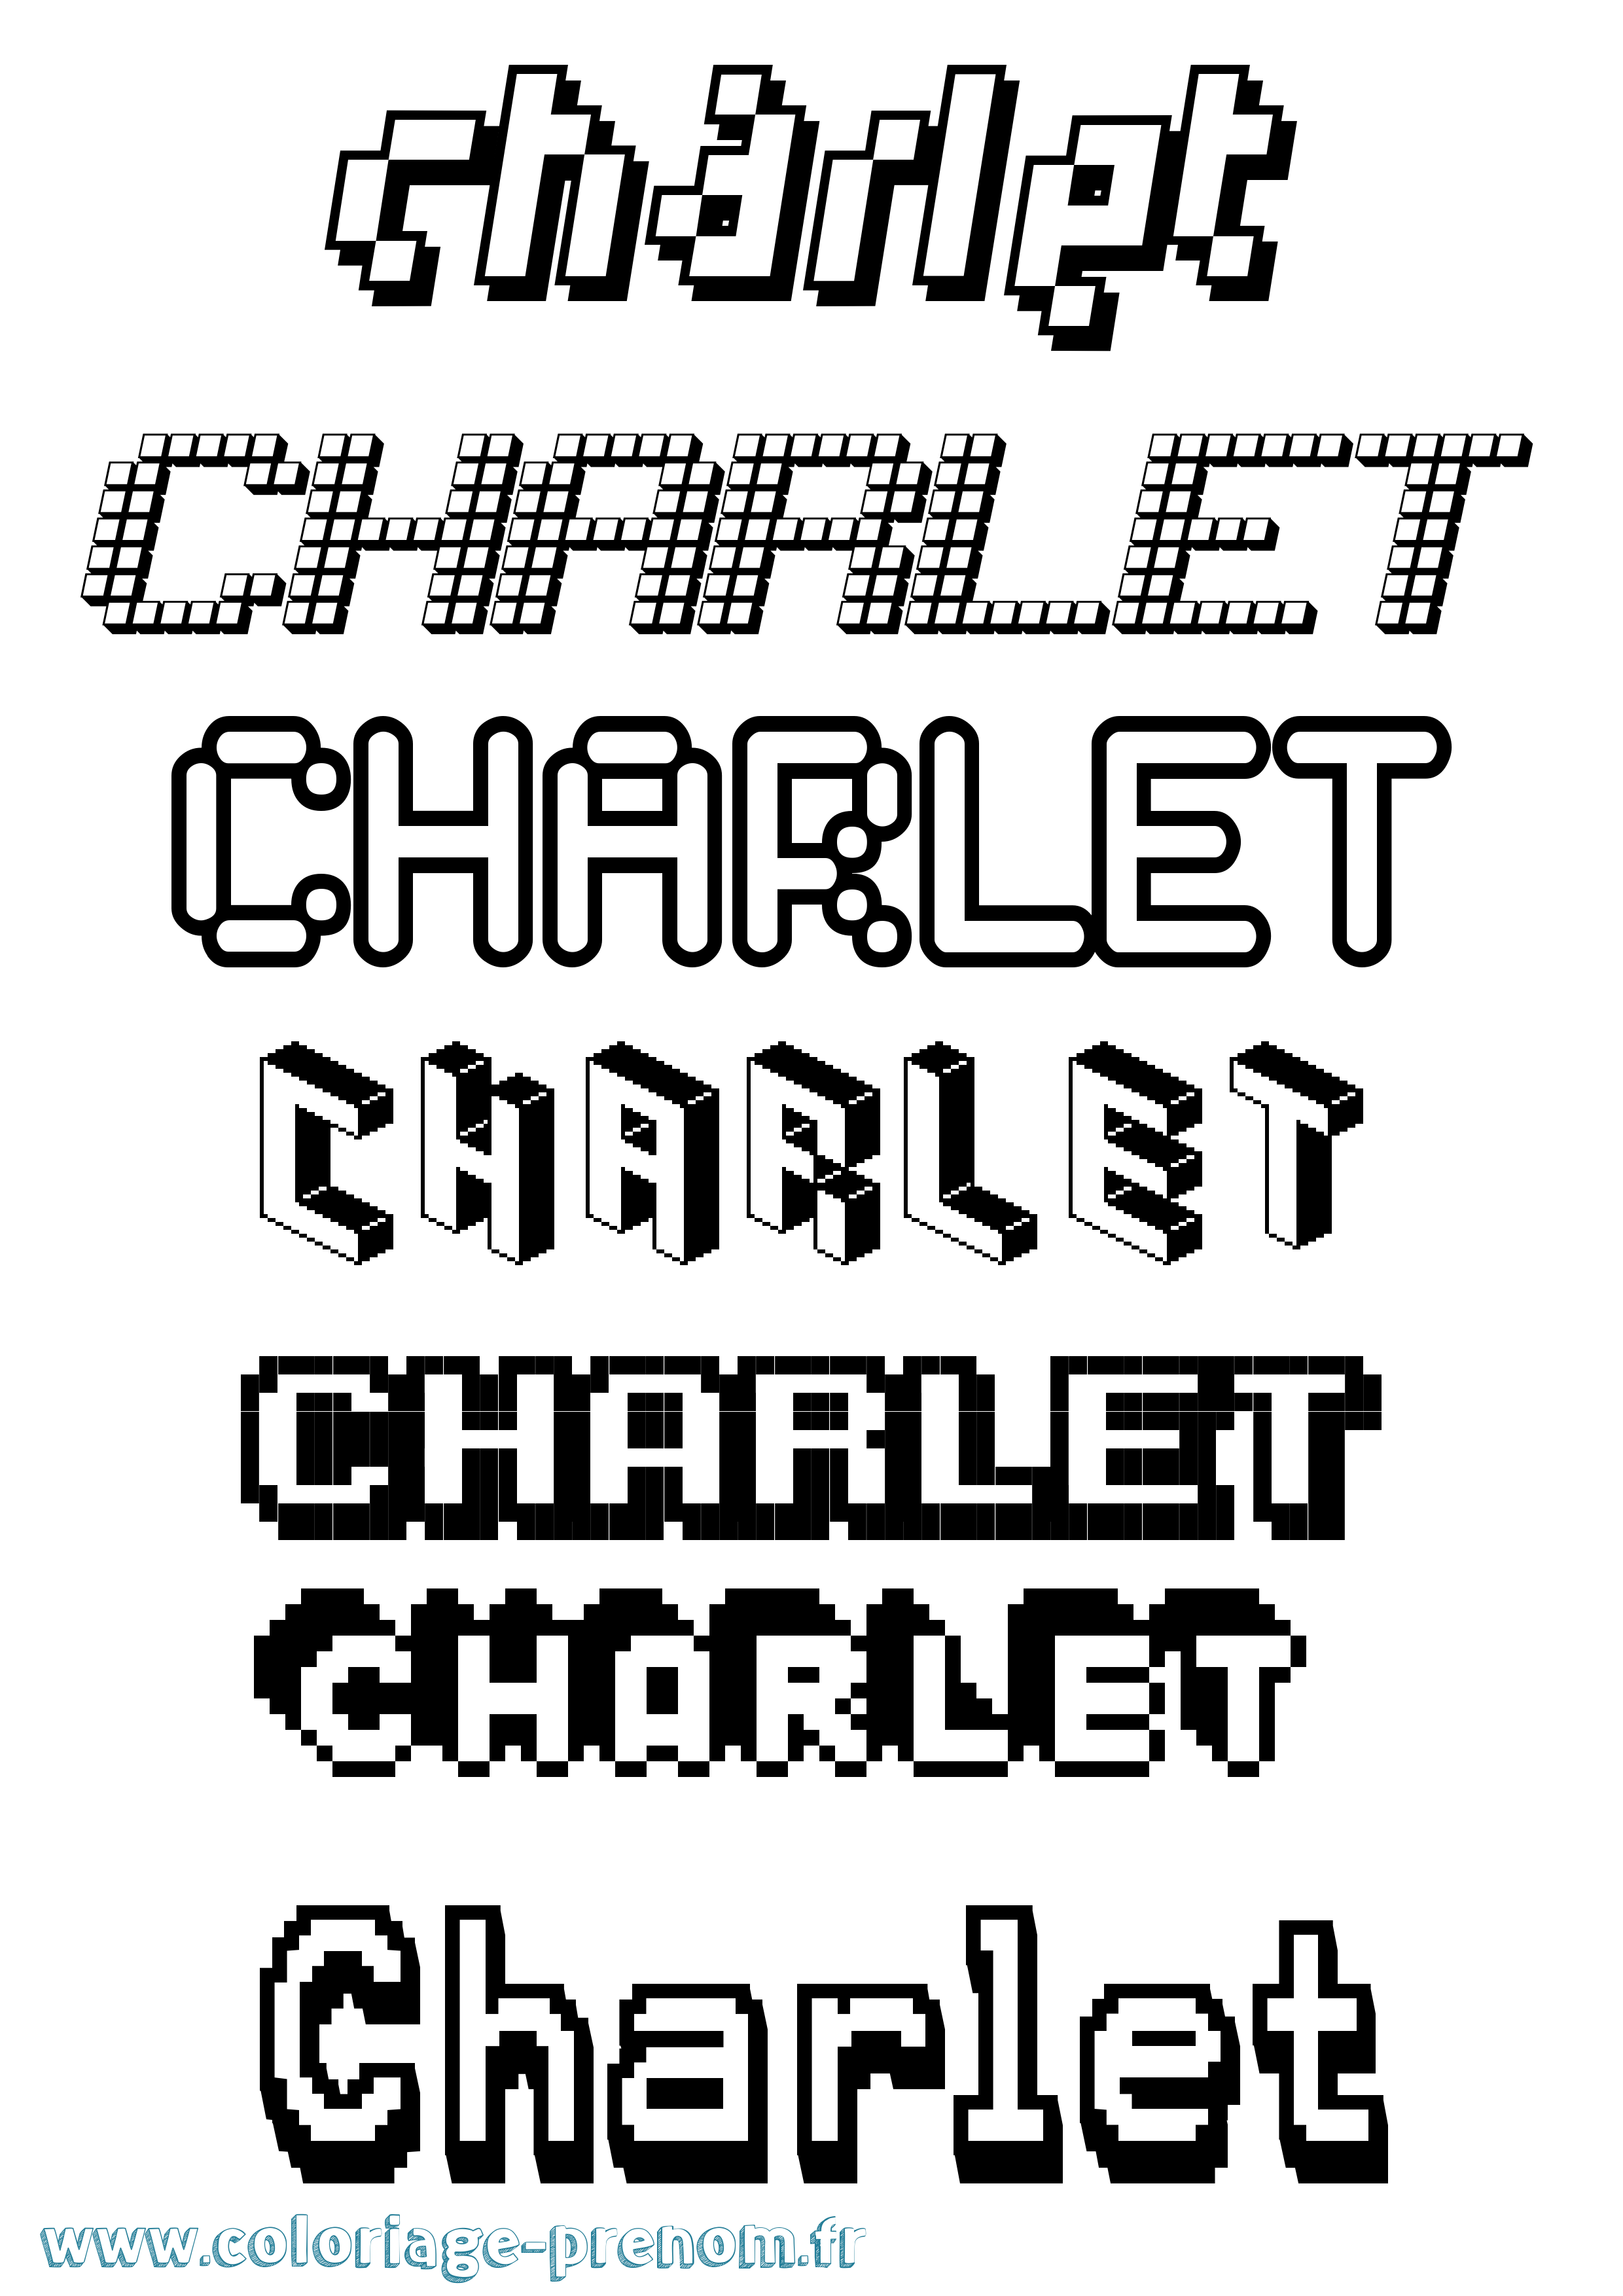 Coloriage prénom Charlet Pixel